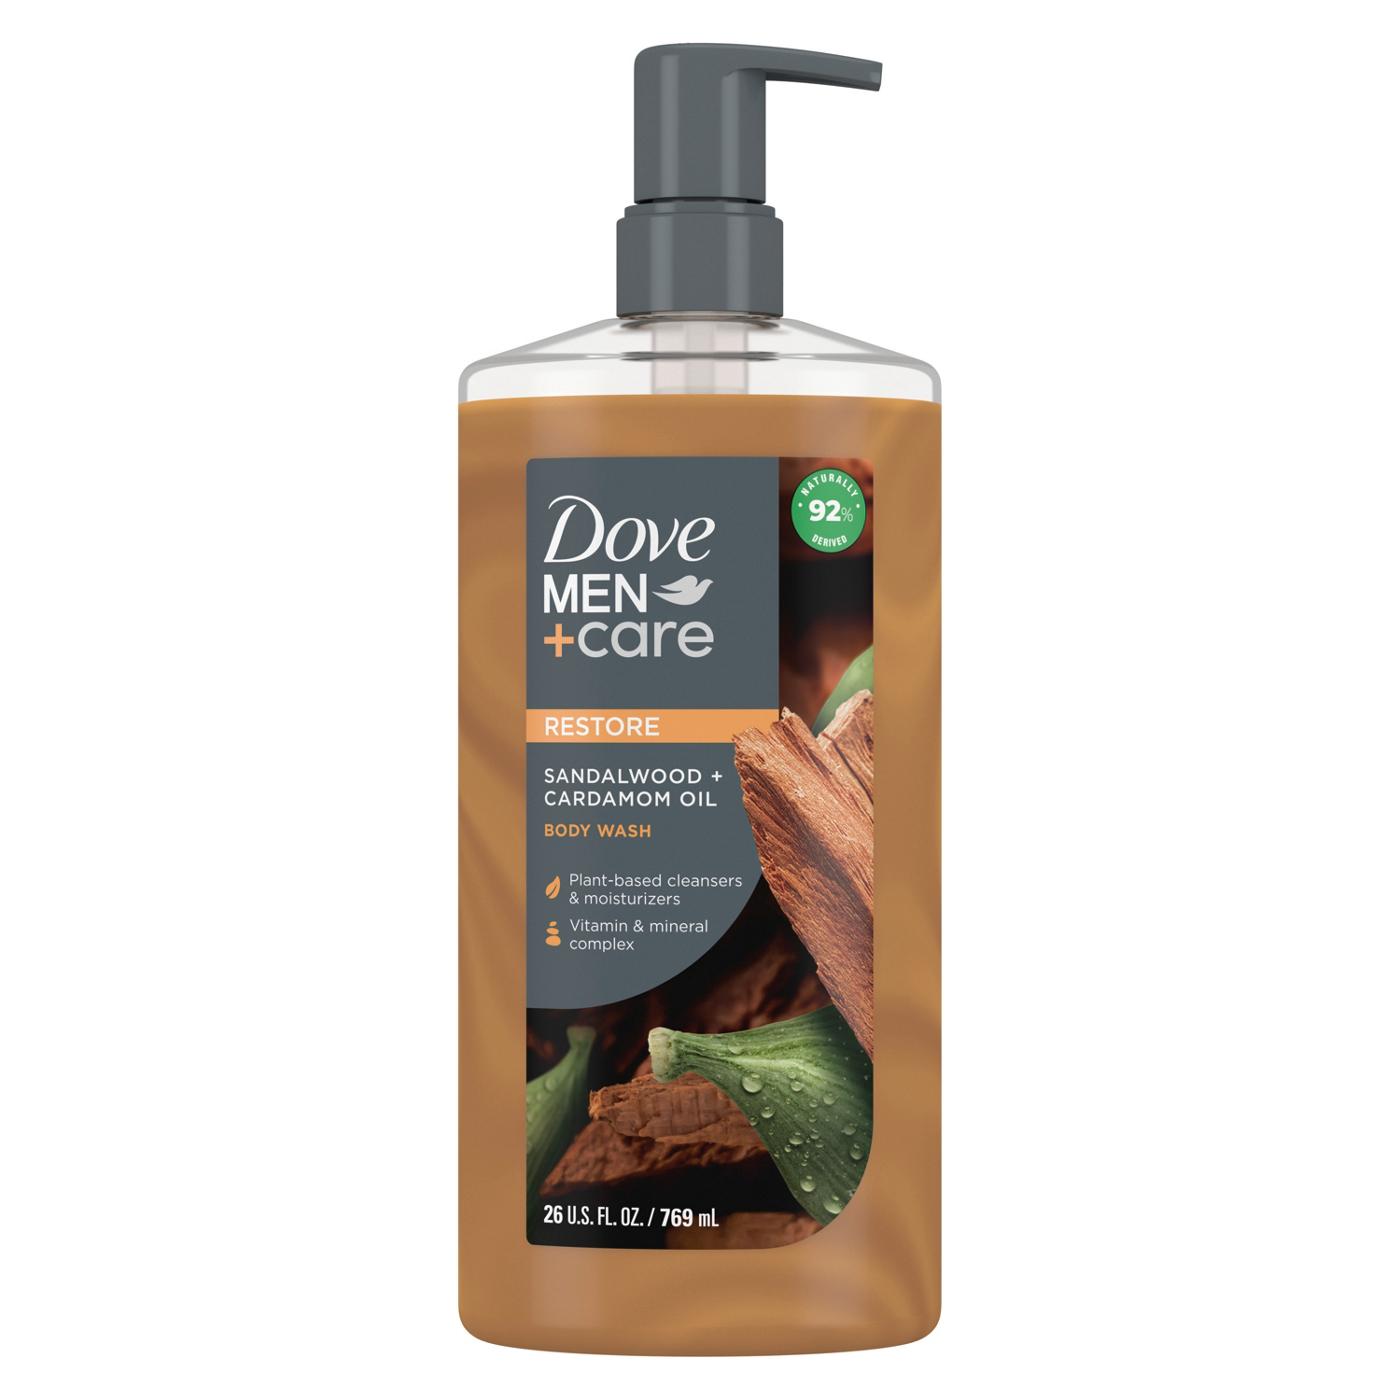 Dove Men+Care Restore Body Wash - Sandalwood + Cardamom Oil ; image 1 of 2